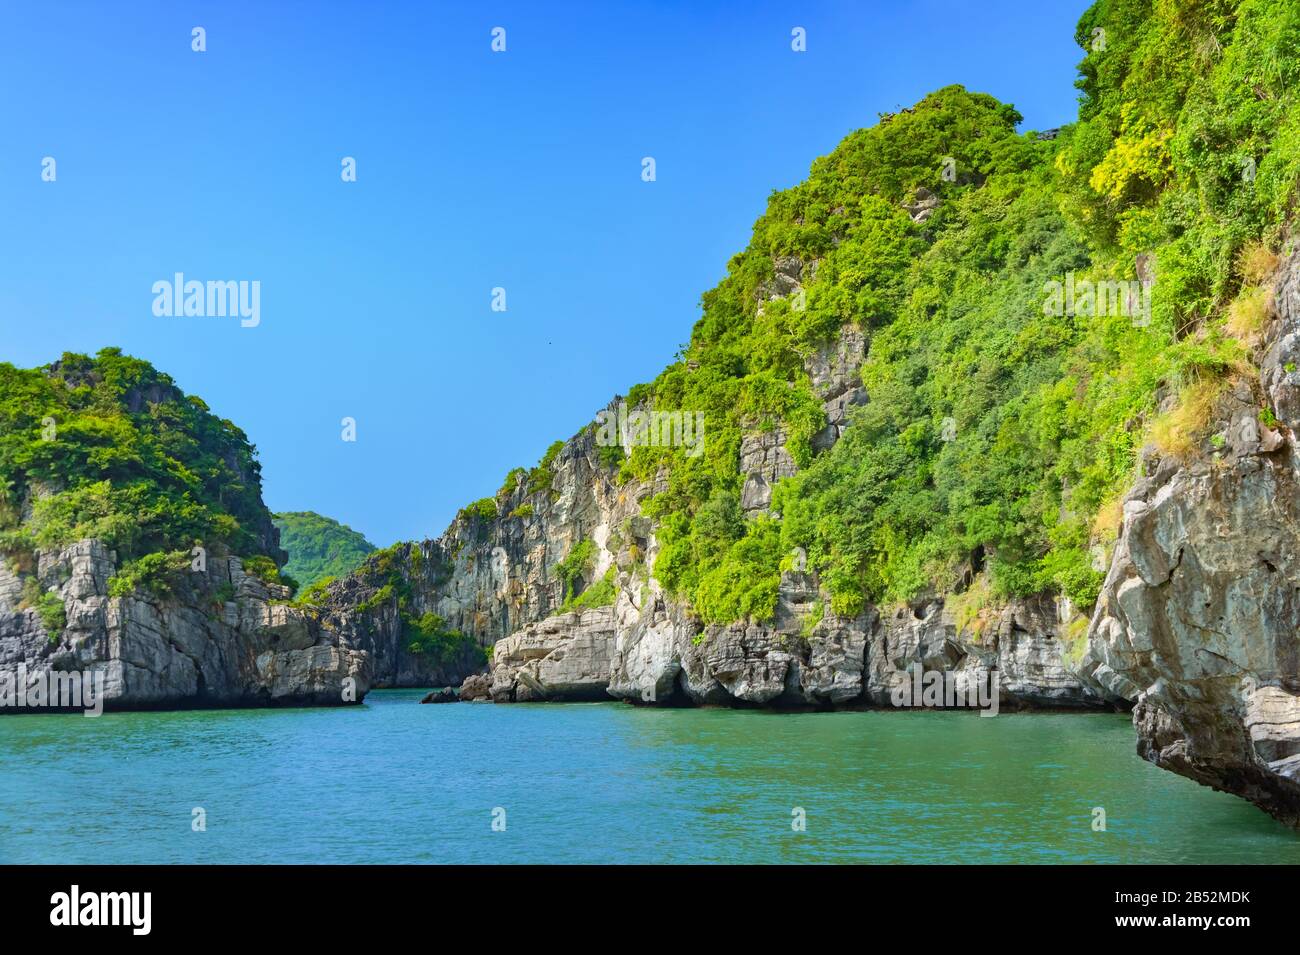 Islas de la bahía de Halong. Atracción turística, espectaculares grutas de piedra caliza formaciones de cuevas naturales. El karst forma tierra en el mar, el patrimonio natural del mundo. Foto de stock